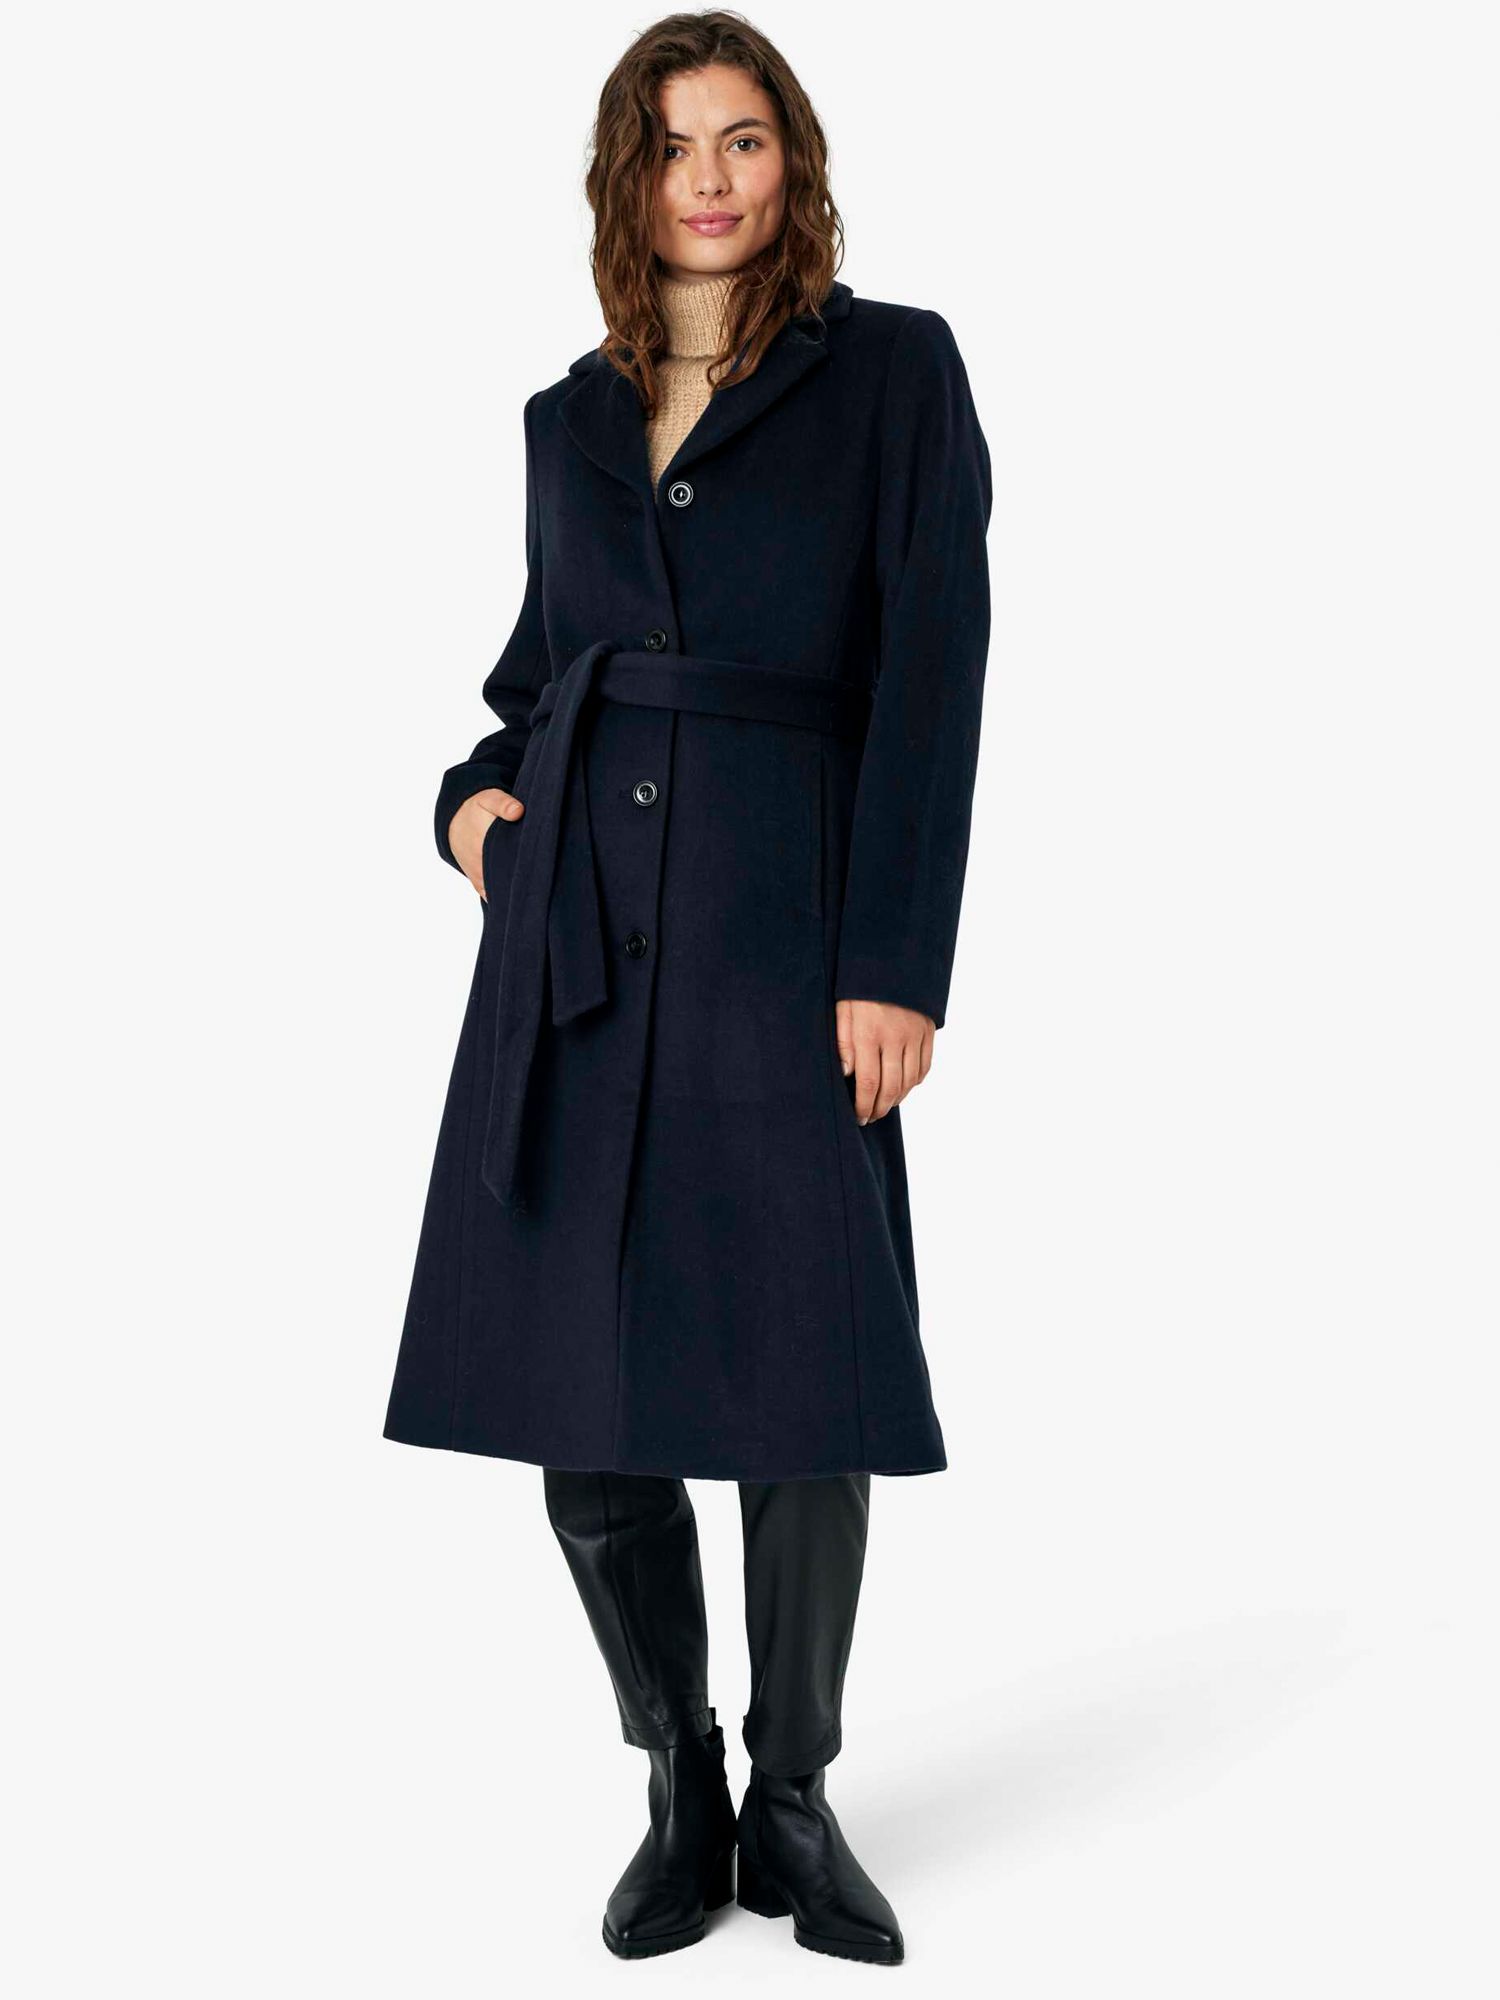 Длинное полушерстяное пальто Cecilia Noa Noa, темно-синий пиджак укороченное пальто полушерстяное zara темно синий